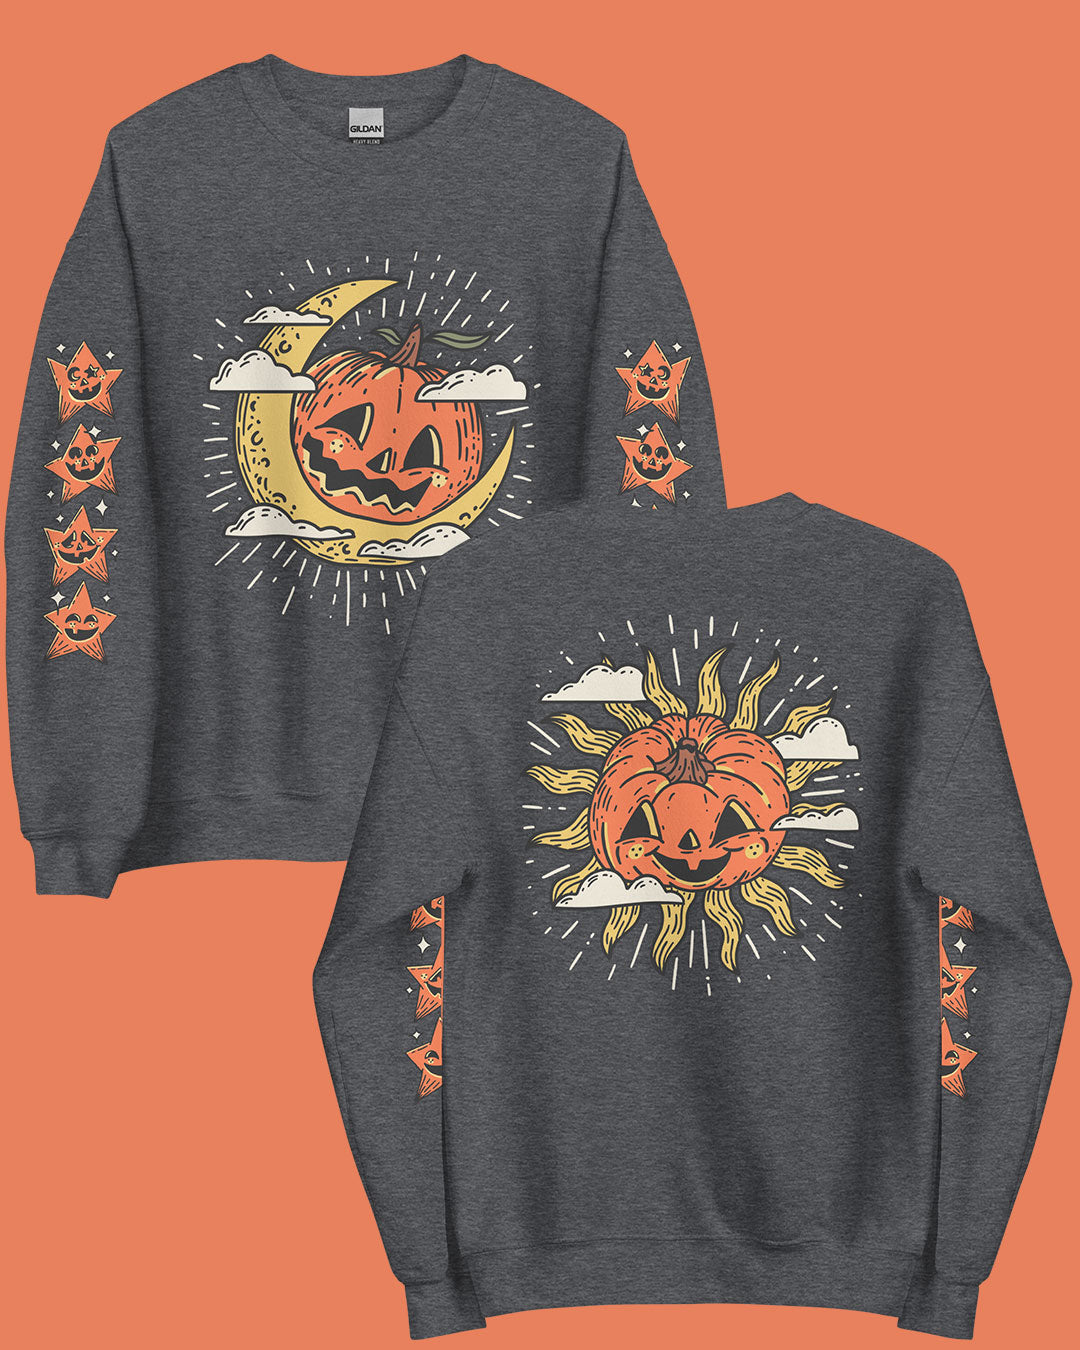 Vintage Pumpkin Moon & Sun Sweatshirt/Hoodie